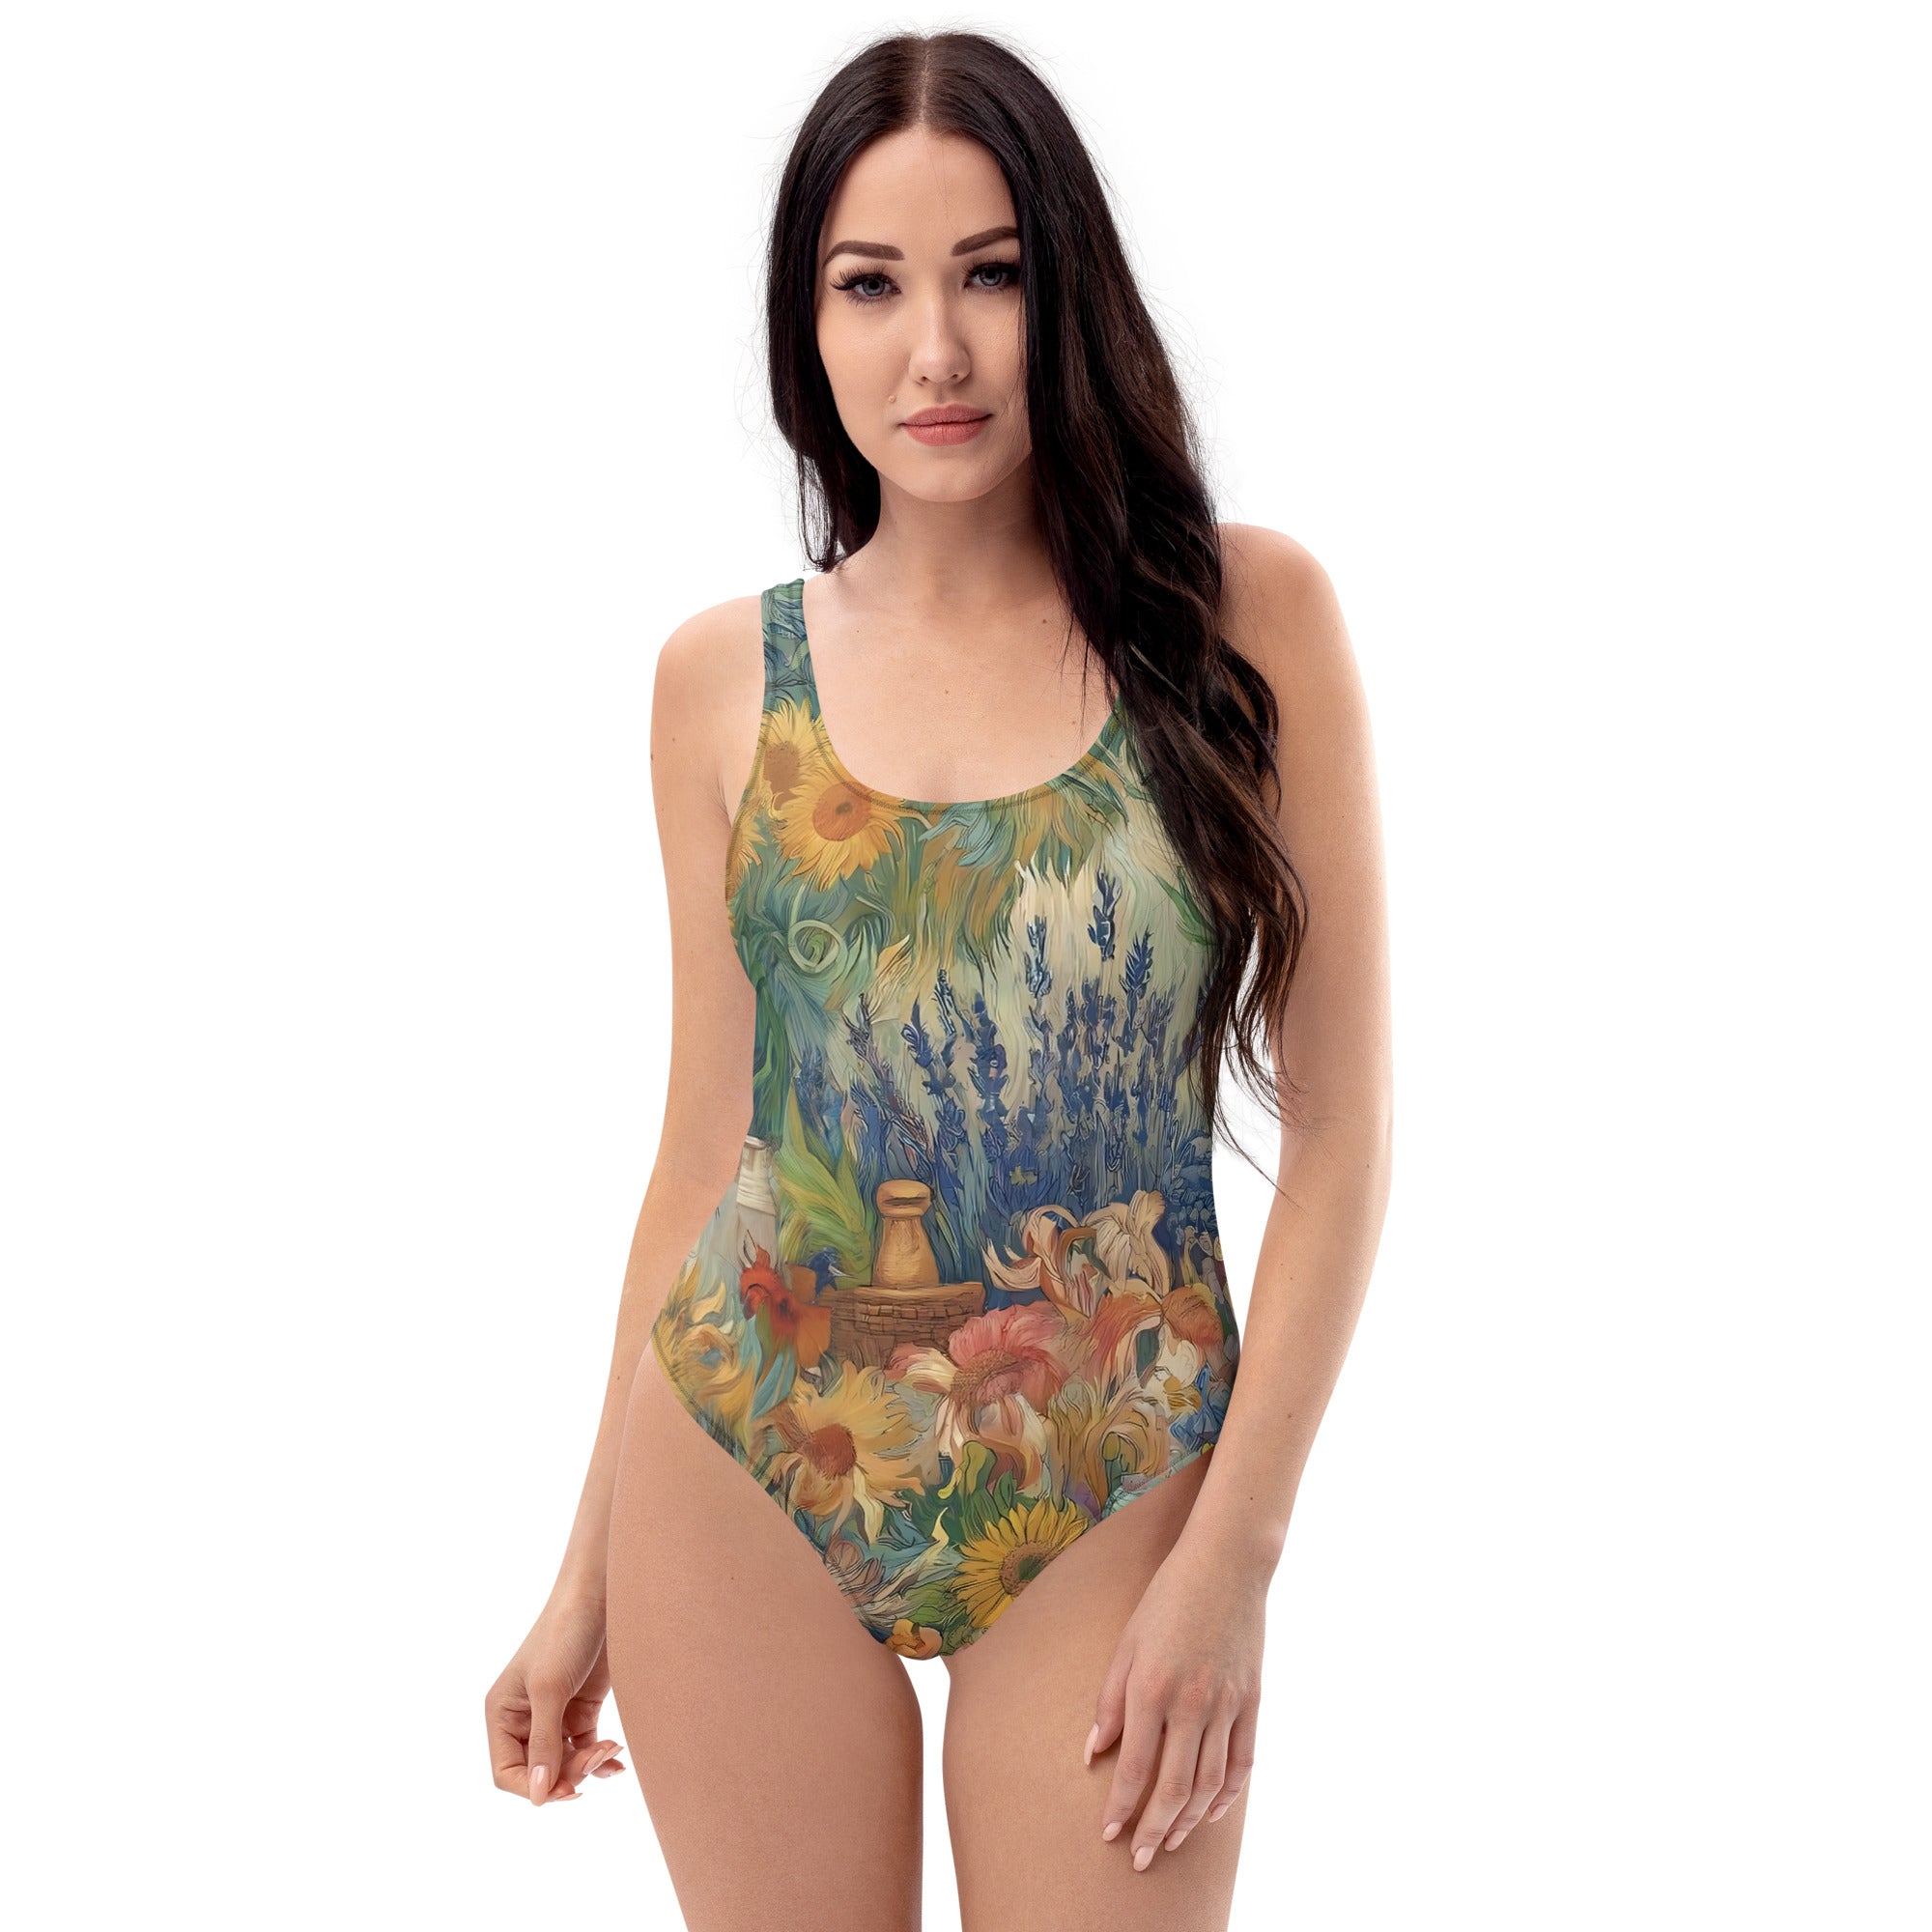 Vincent van Gogh 'Garden at Arles' Famous Painting Swimsuit | Premium Art One Piece Swimsuit